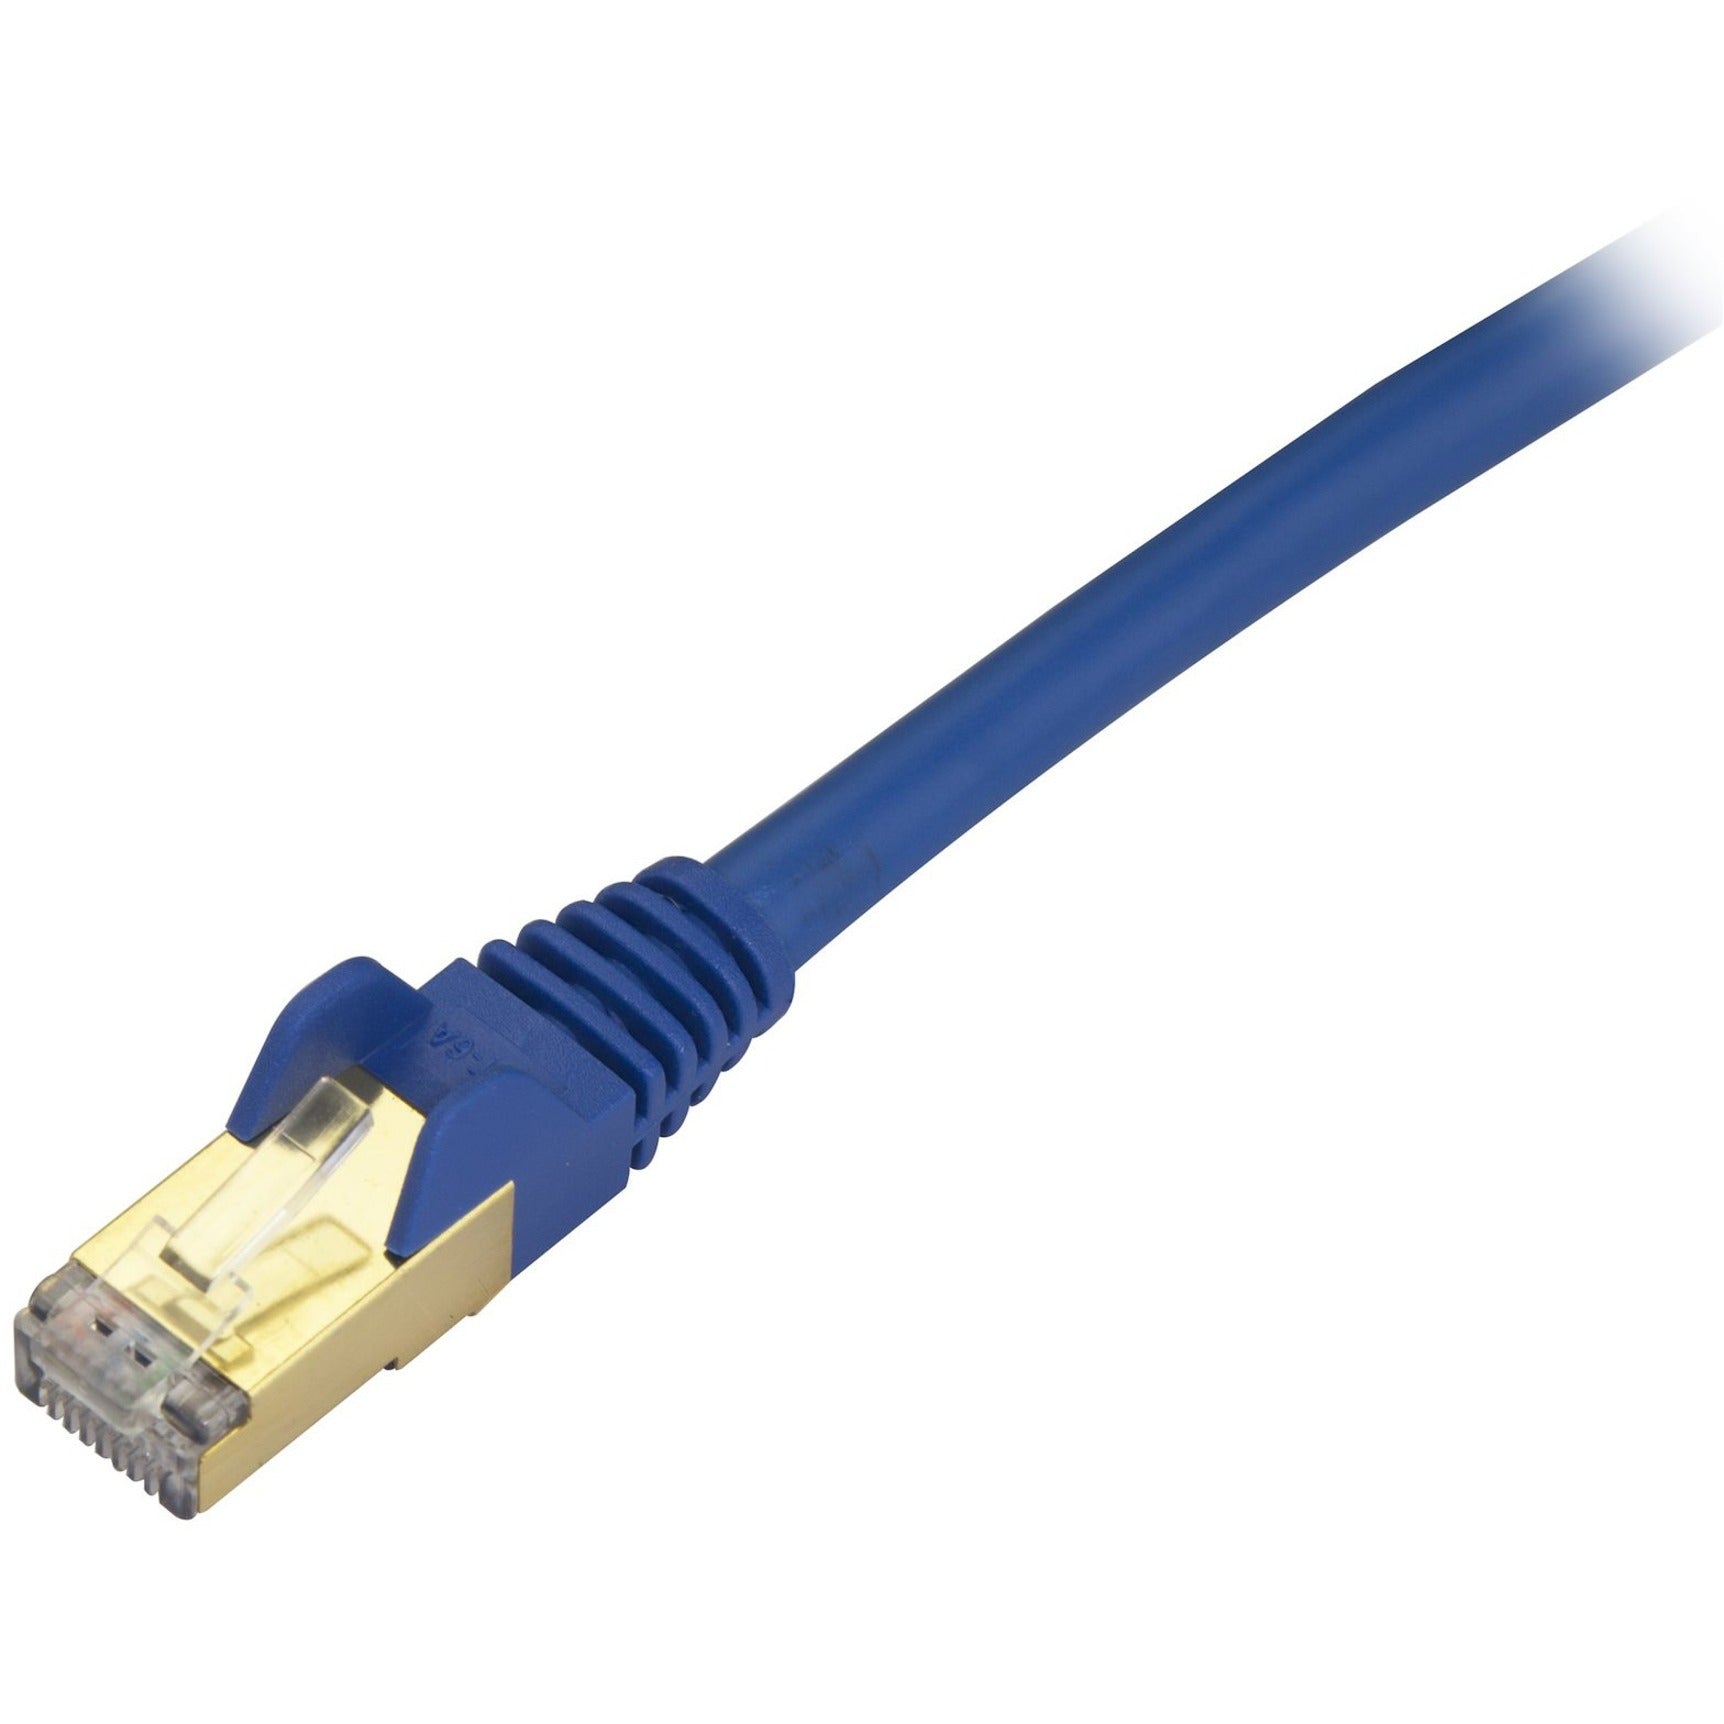 StarTech.com C6ASPAT20BL Cat6a Ethernet Patch Cable - Shielded (STP) - 20 ft. Blau Langes Ethernet-Kabel